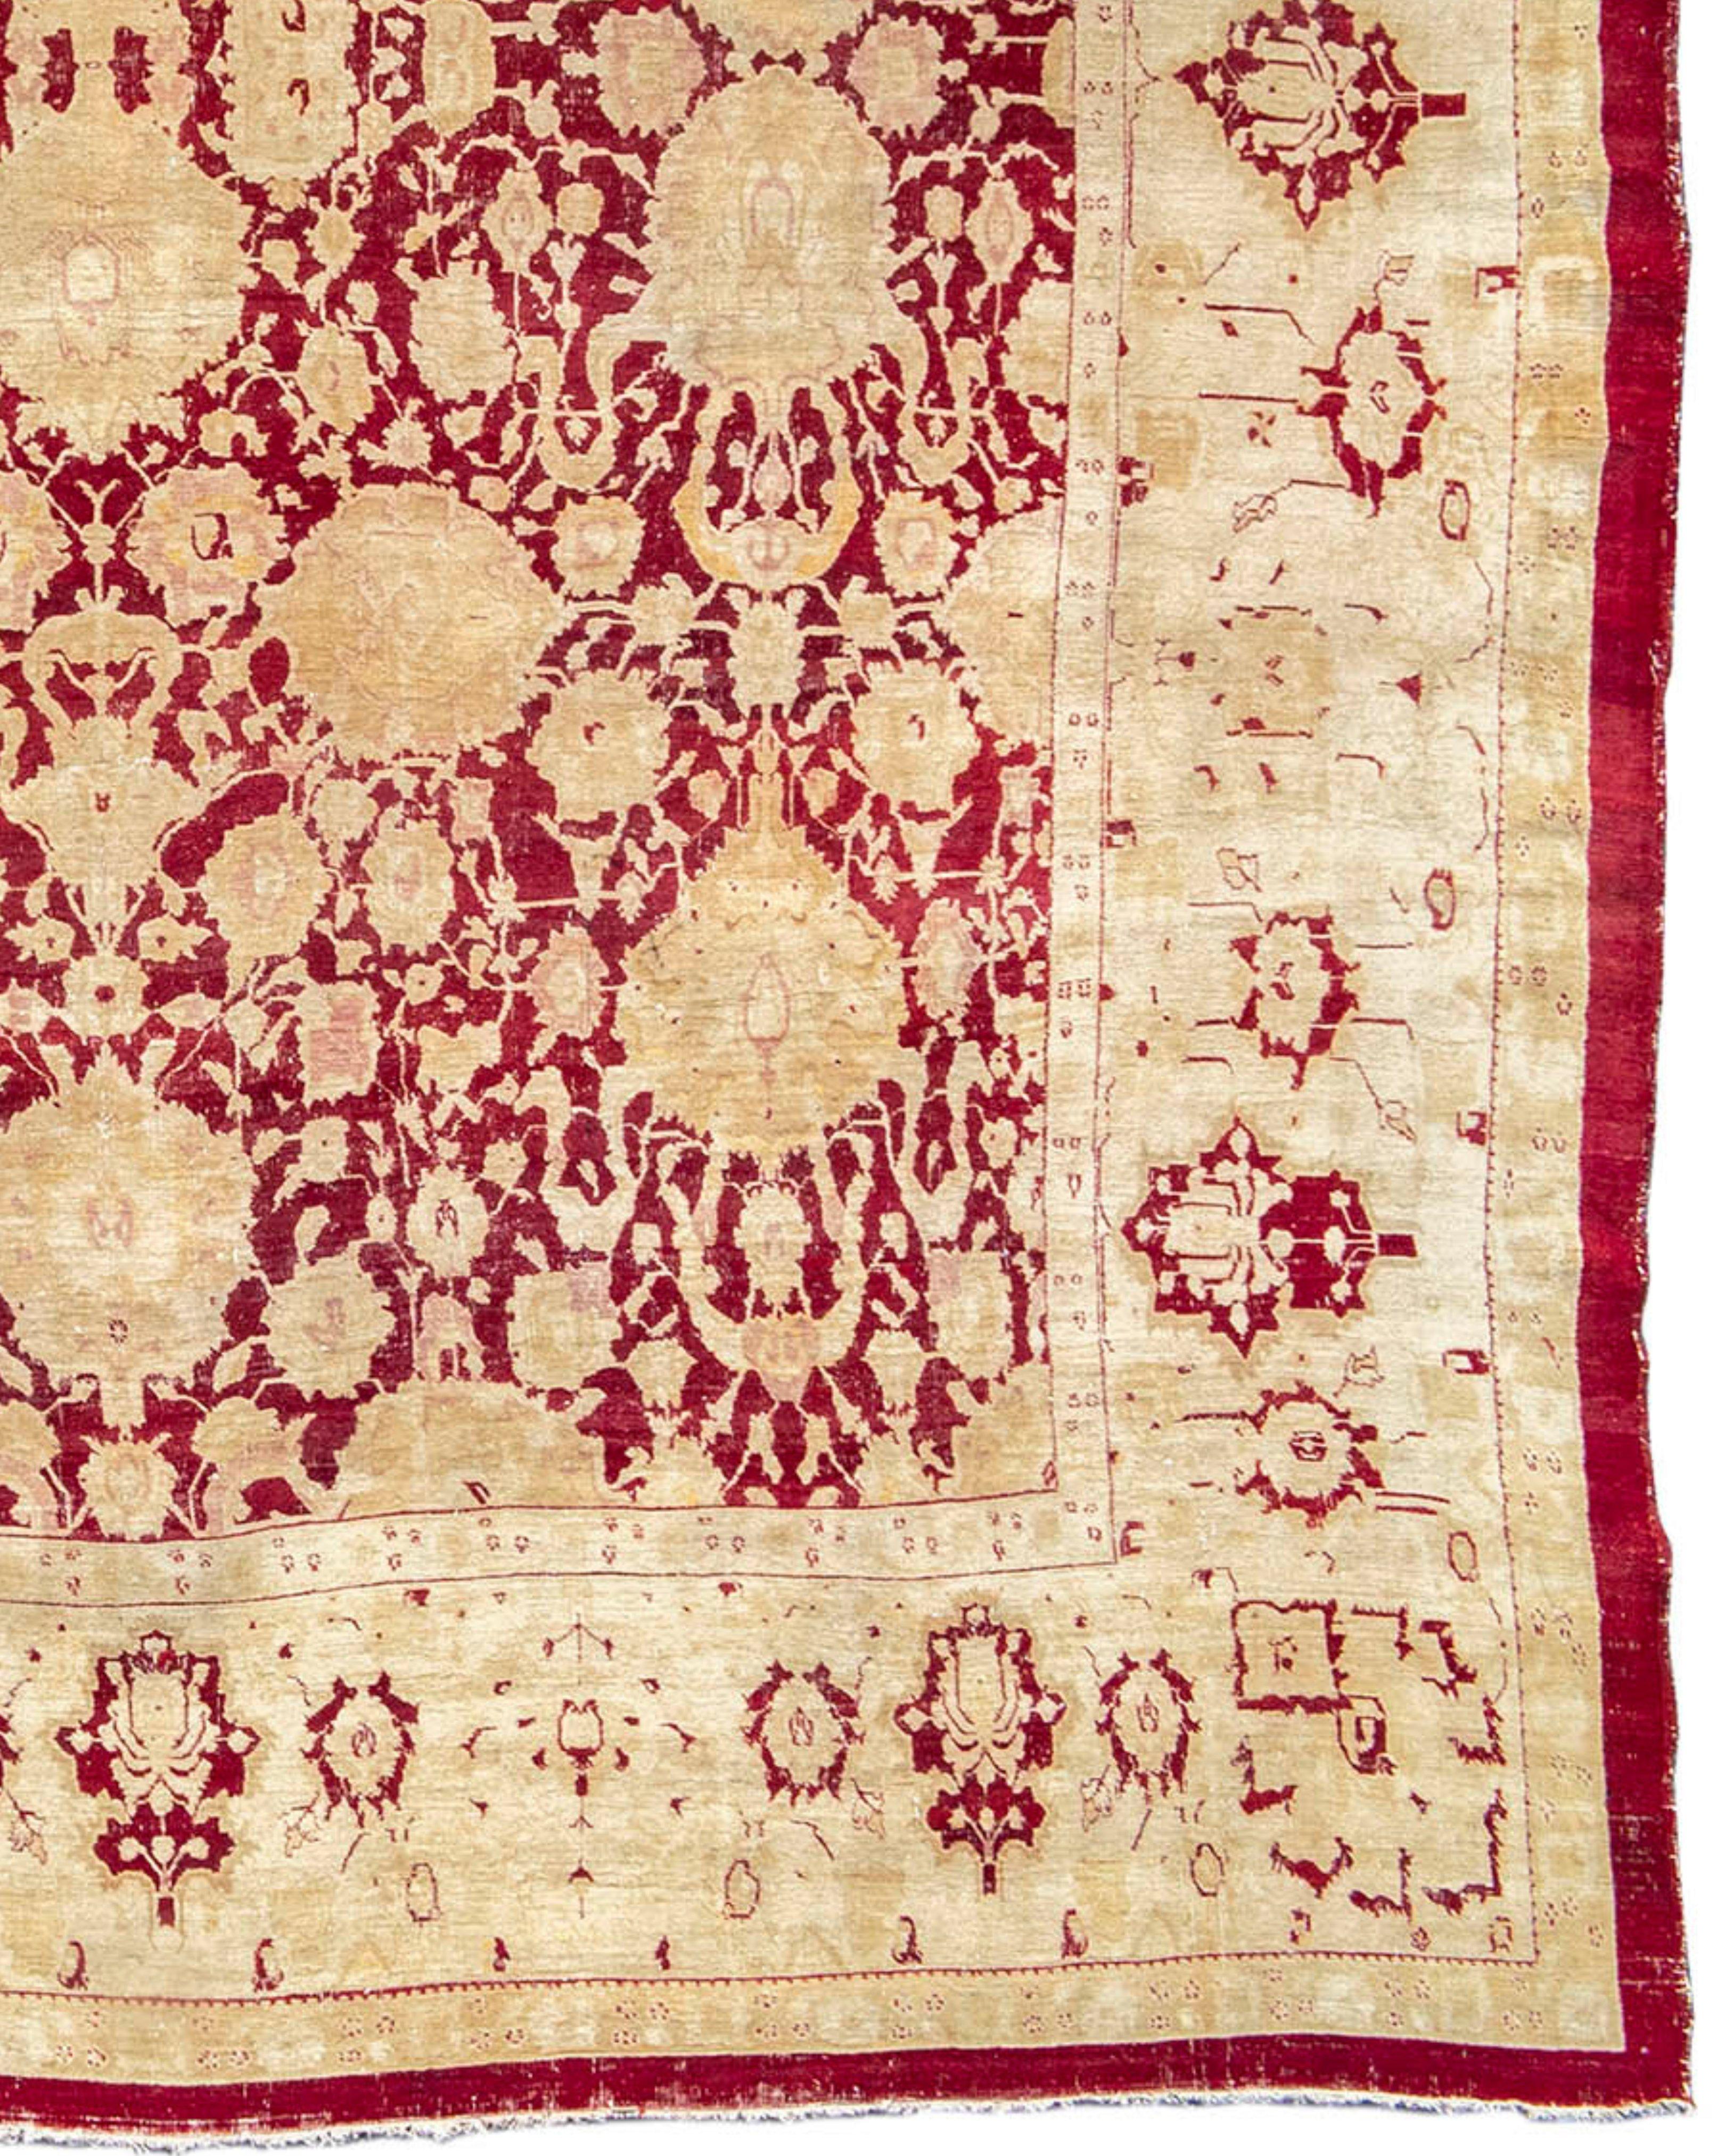 Antiker großer roter und goldener Agra-Teppich, spätes 19. Jahrhundert

Zusätzliche Informationen:
Abmessungen: 13'3